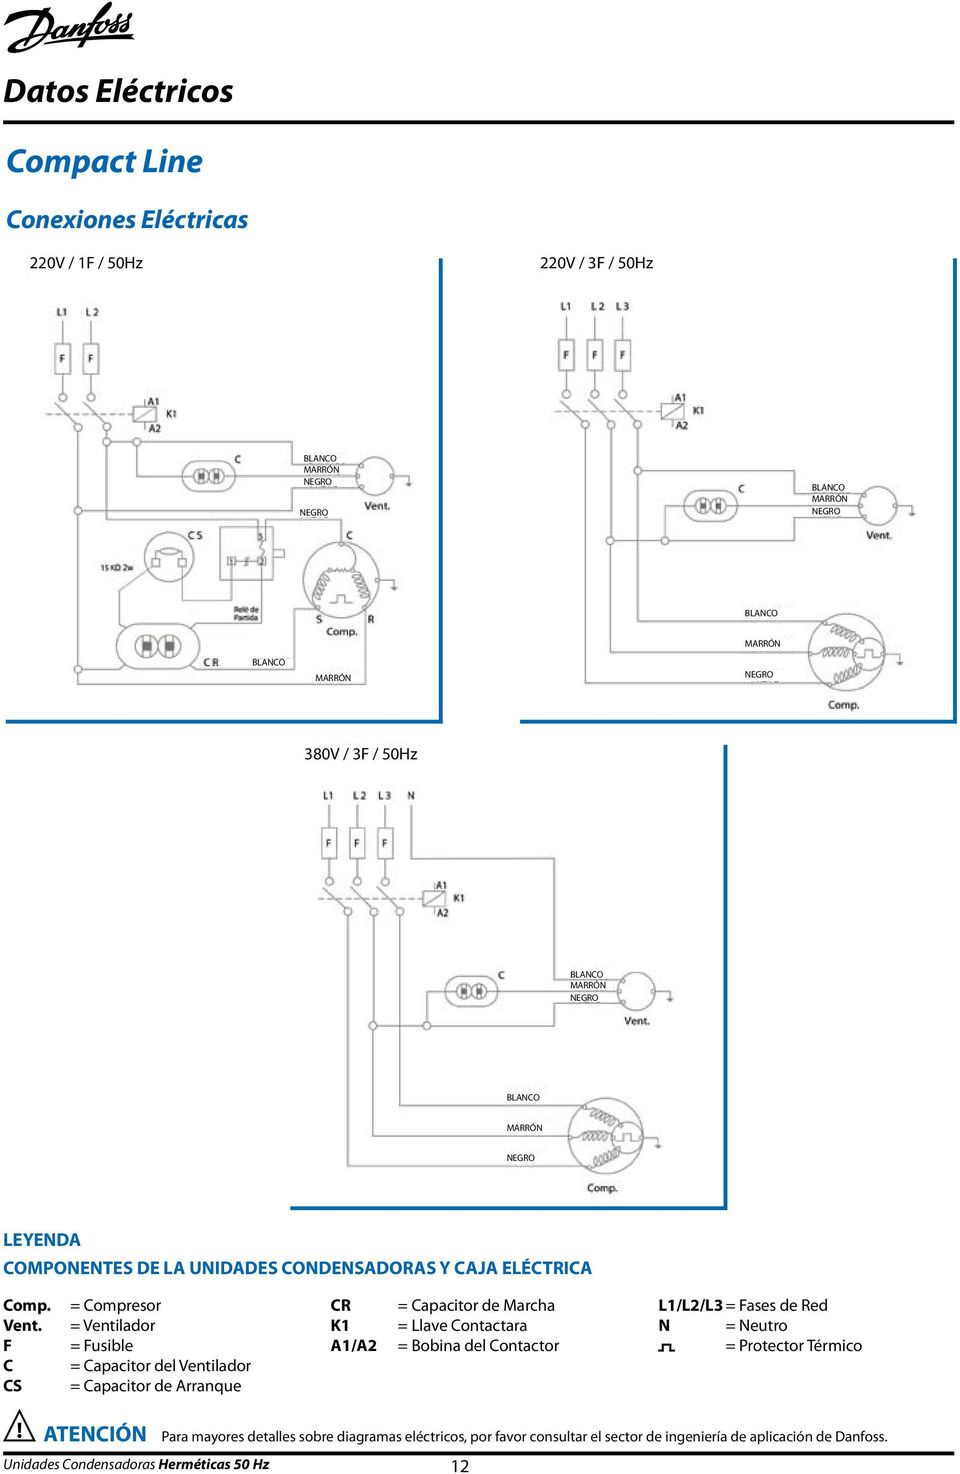 F C CS = Compresor = Ventilador = Fusible = Capacitor del Ventilador = Capacitor de Arranque CR K1 A1/A2 = Capacitor de Marcha = Llave Contactara = Bobina del Contactor